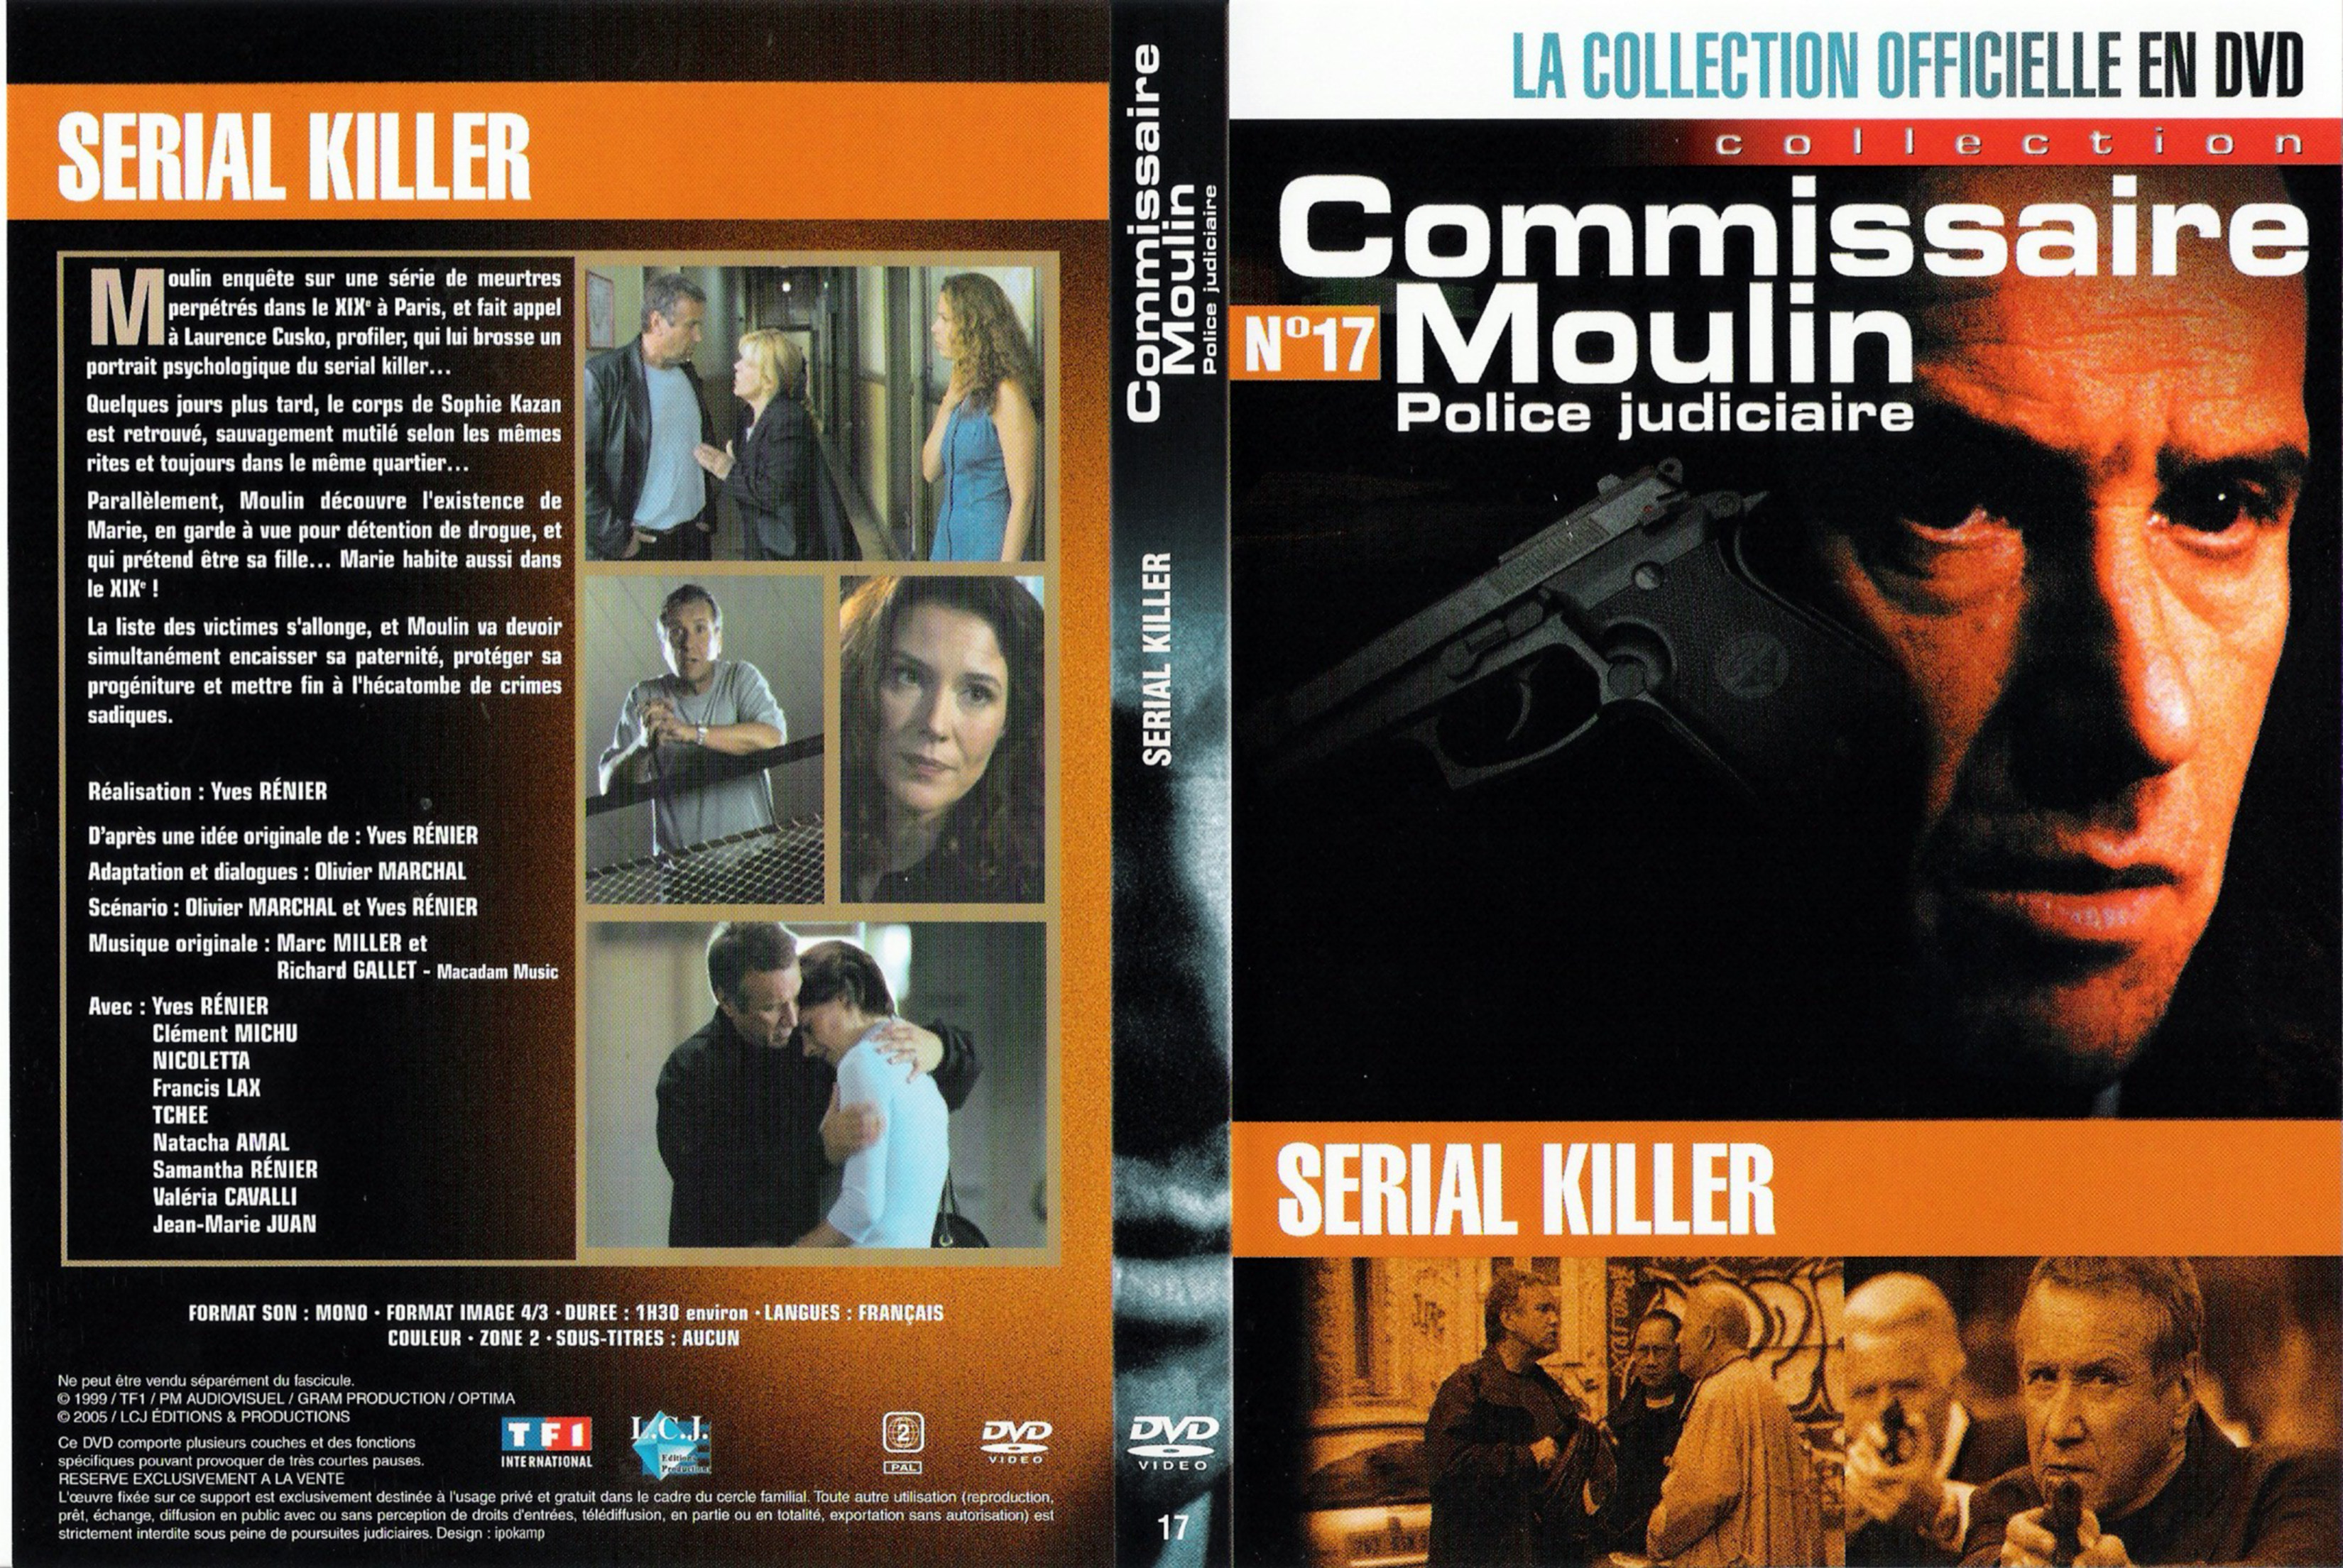 Jaquette DVD Commissaire Moulin - Serial Killer